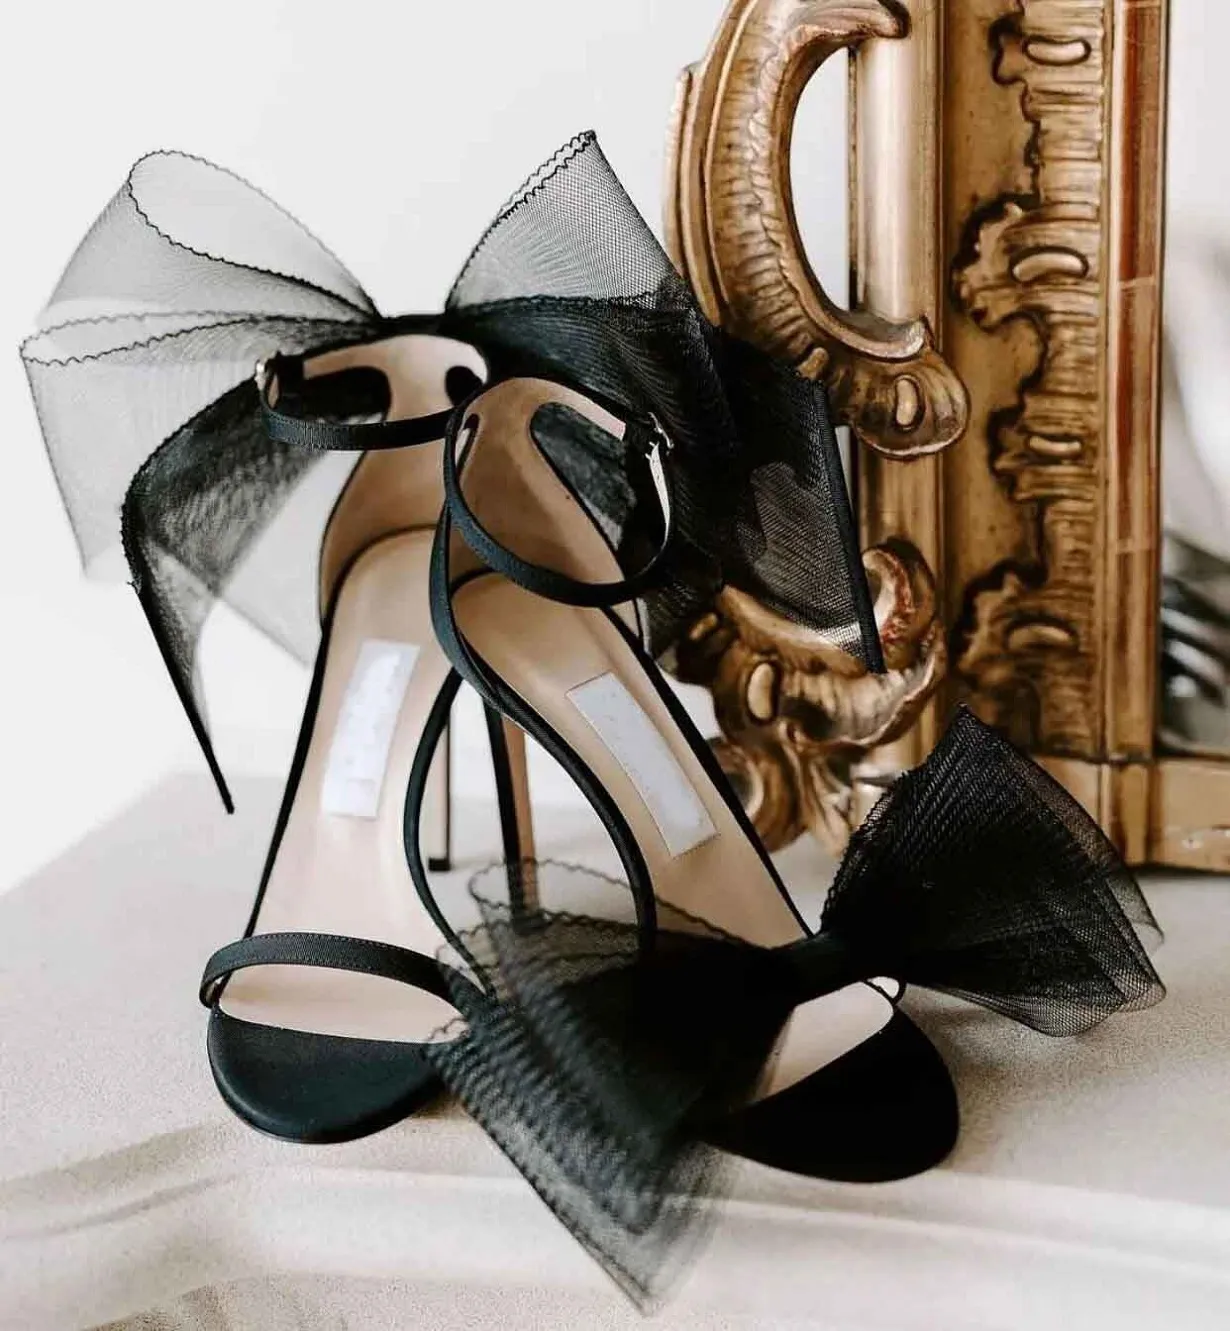 إيطاليا ماركات أفيلين النساء الصنادل الأحذية شبكة جلدية أنيقة سيدة s- جودة عالية الكعب الزفاف حزب العرائس جنسي المشي الأبيض الأسود عارية eu35-43